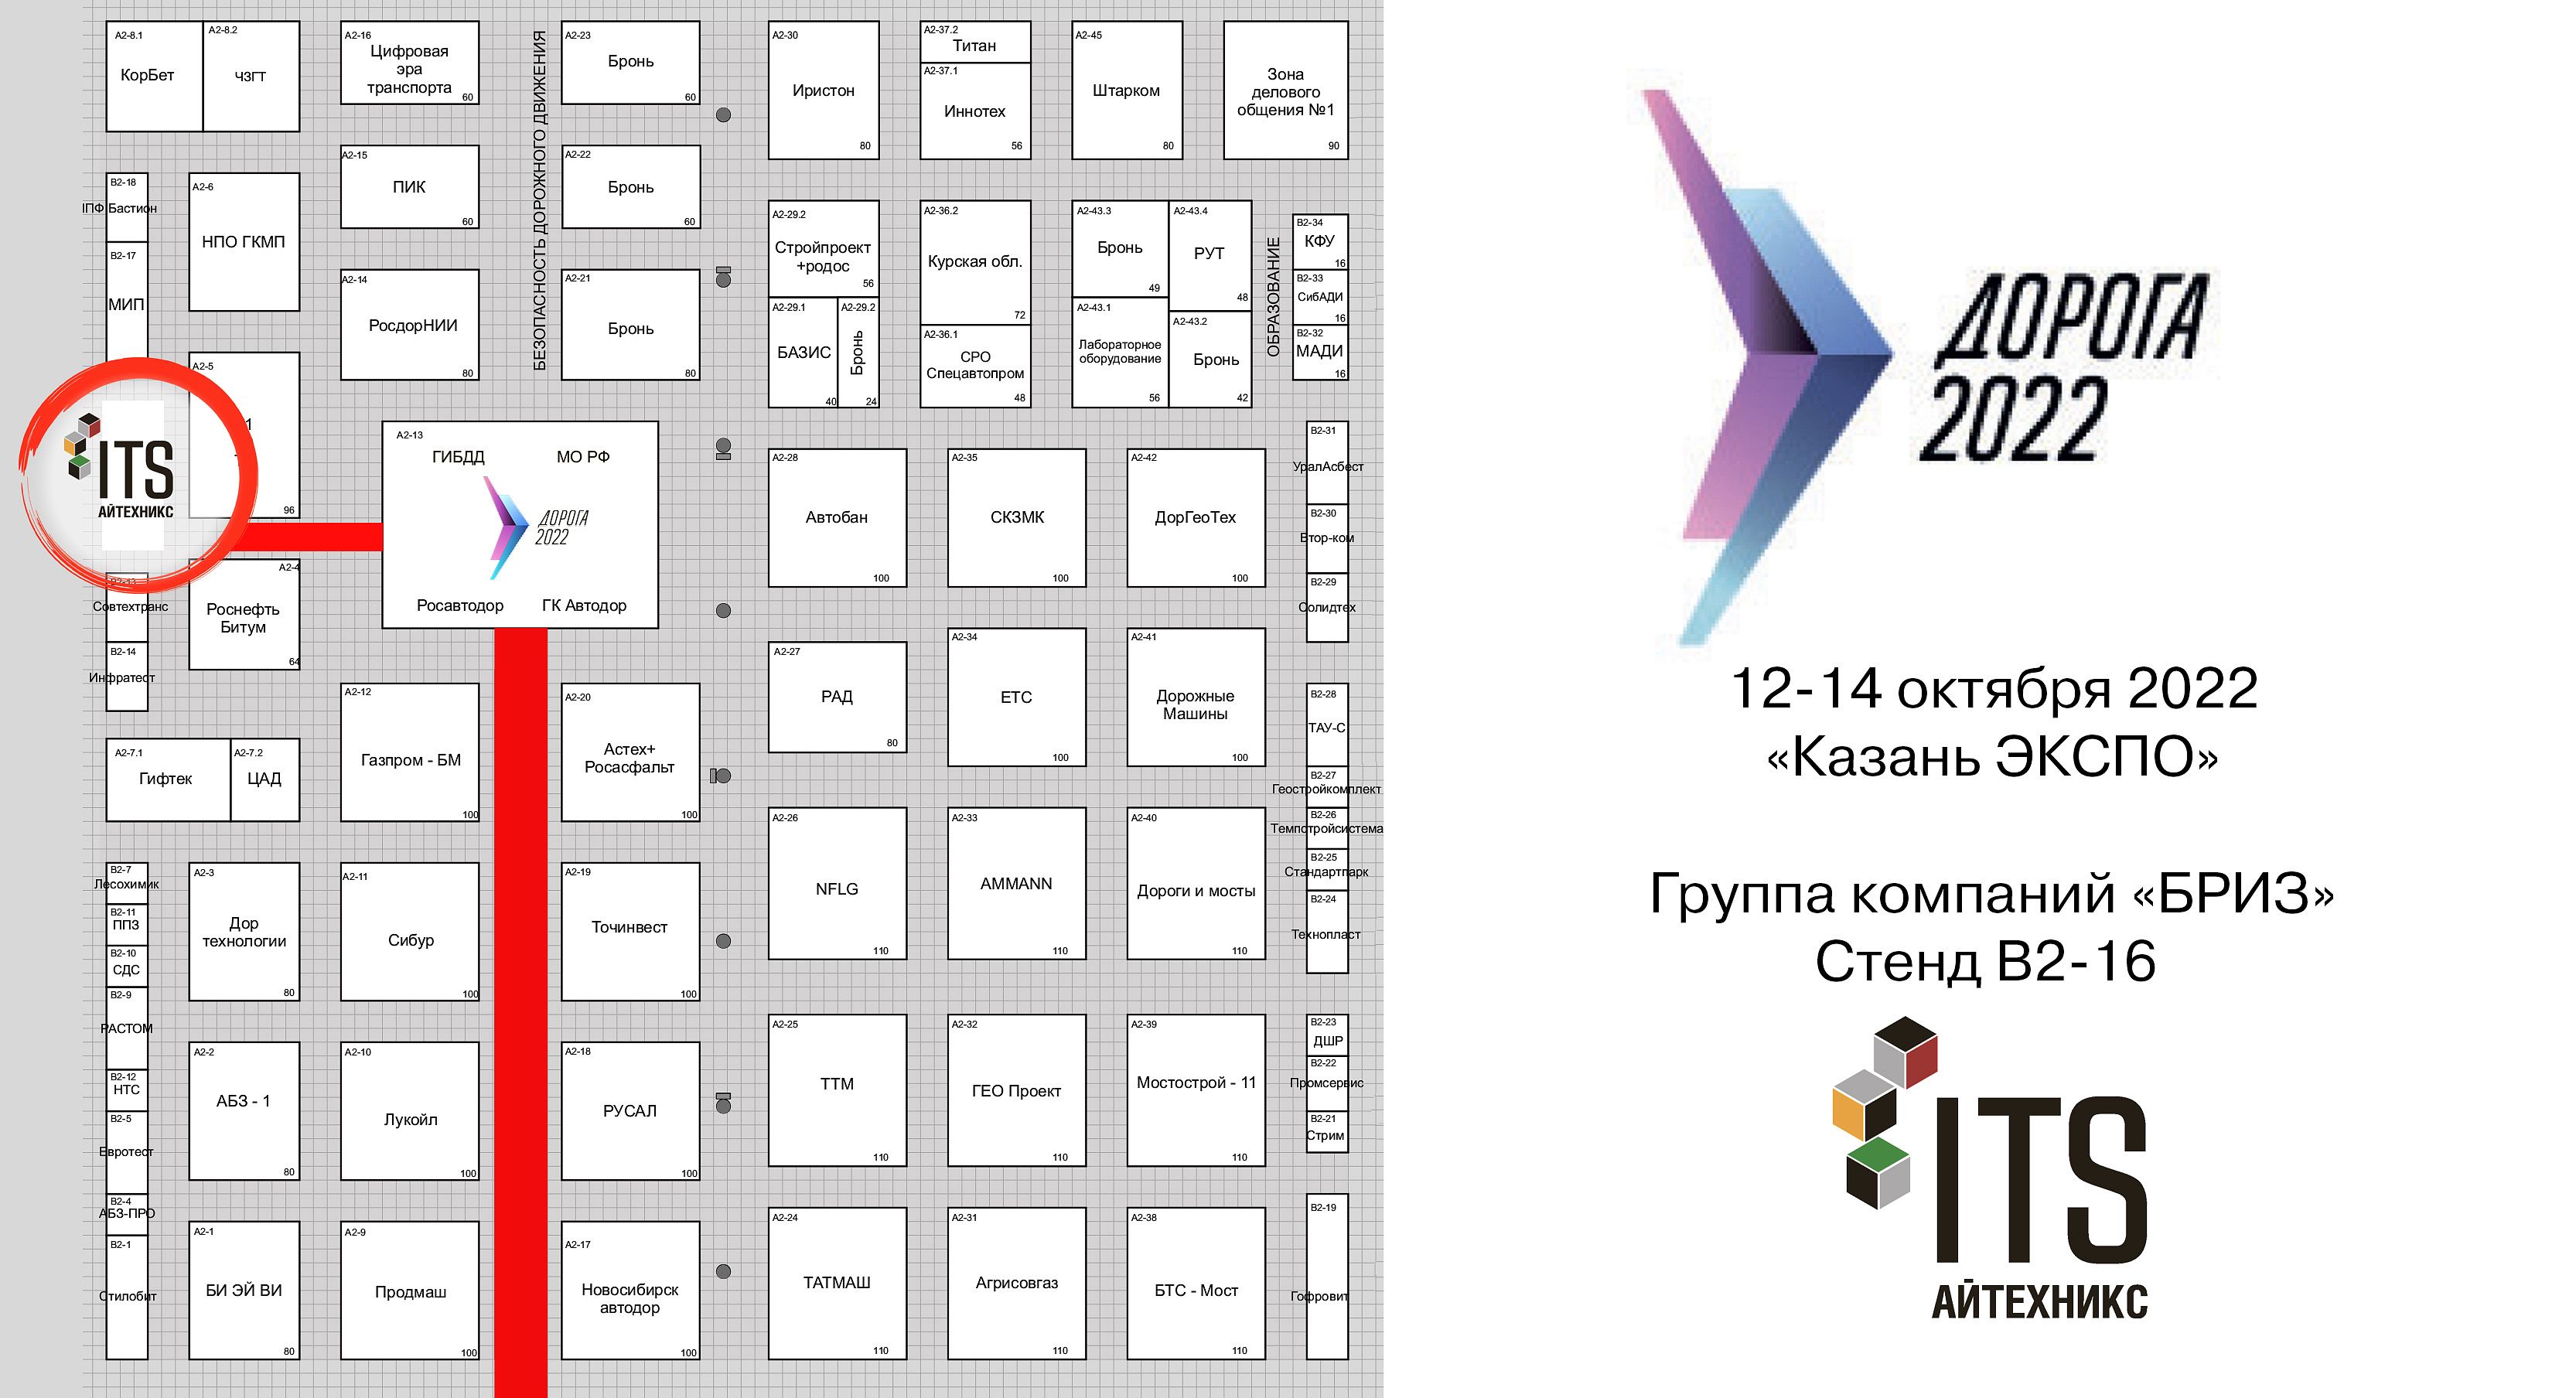 Участвуем в выставке "Дорога-2022" в Казани